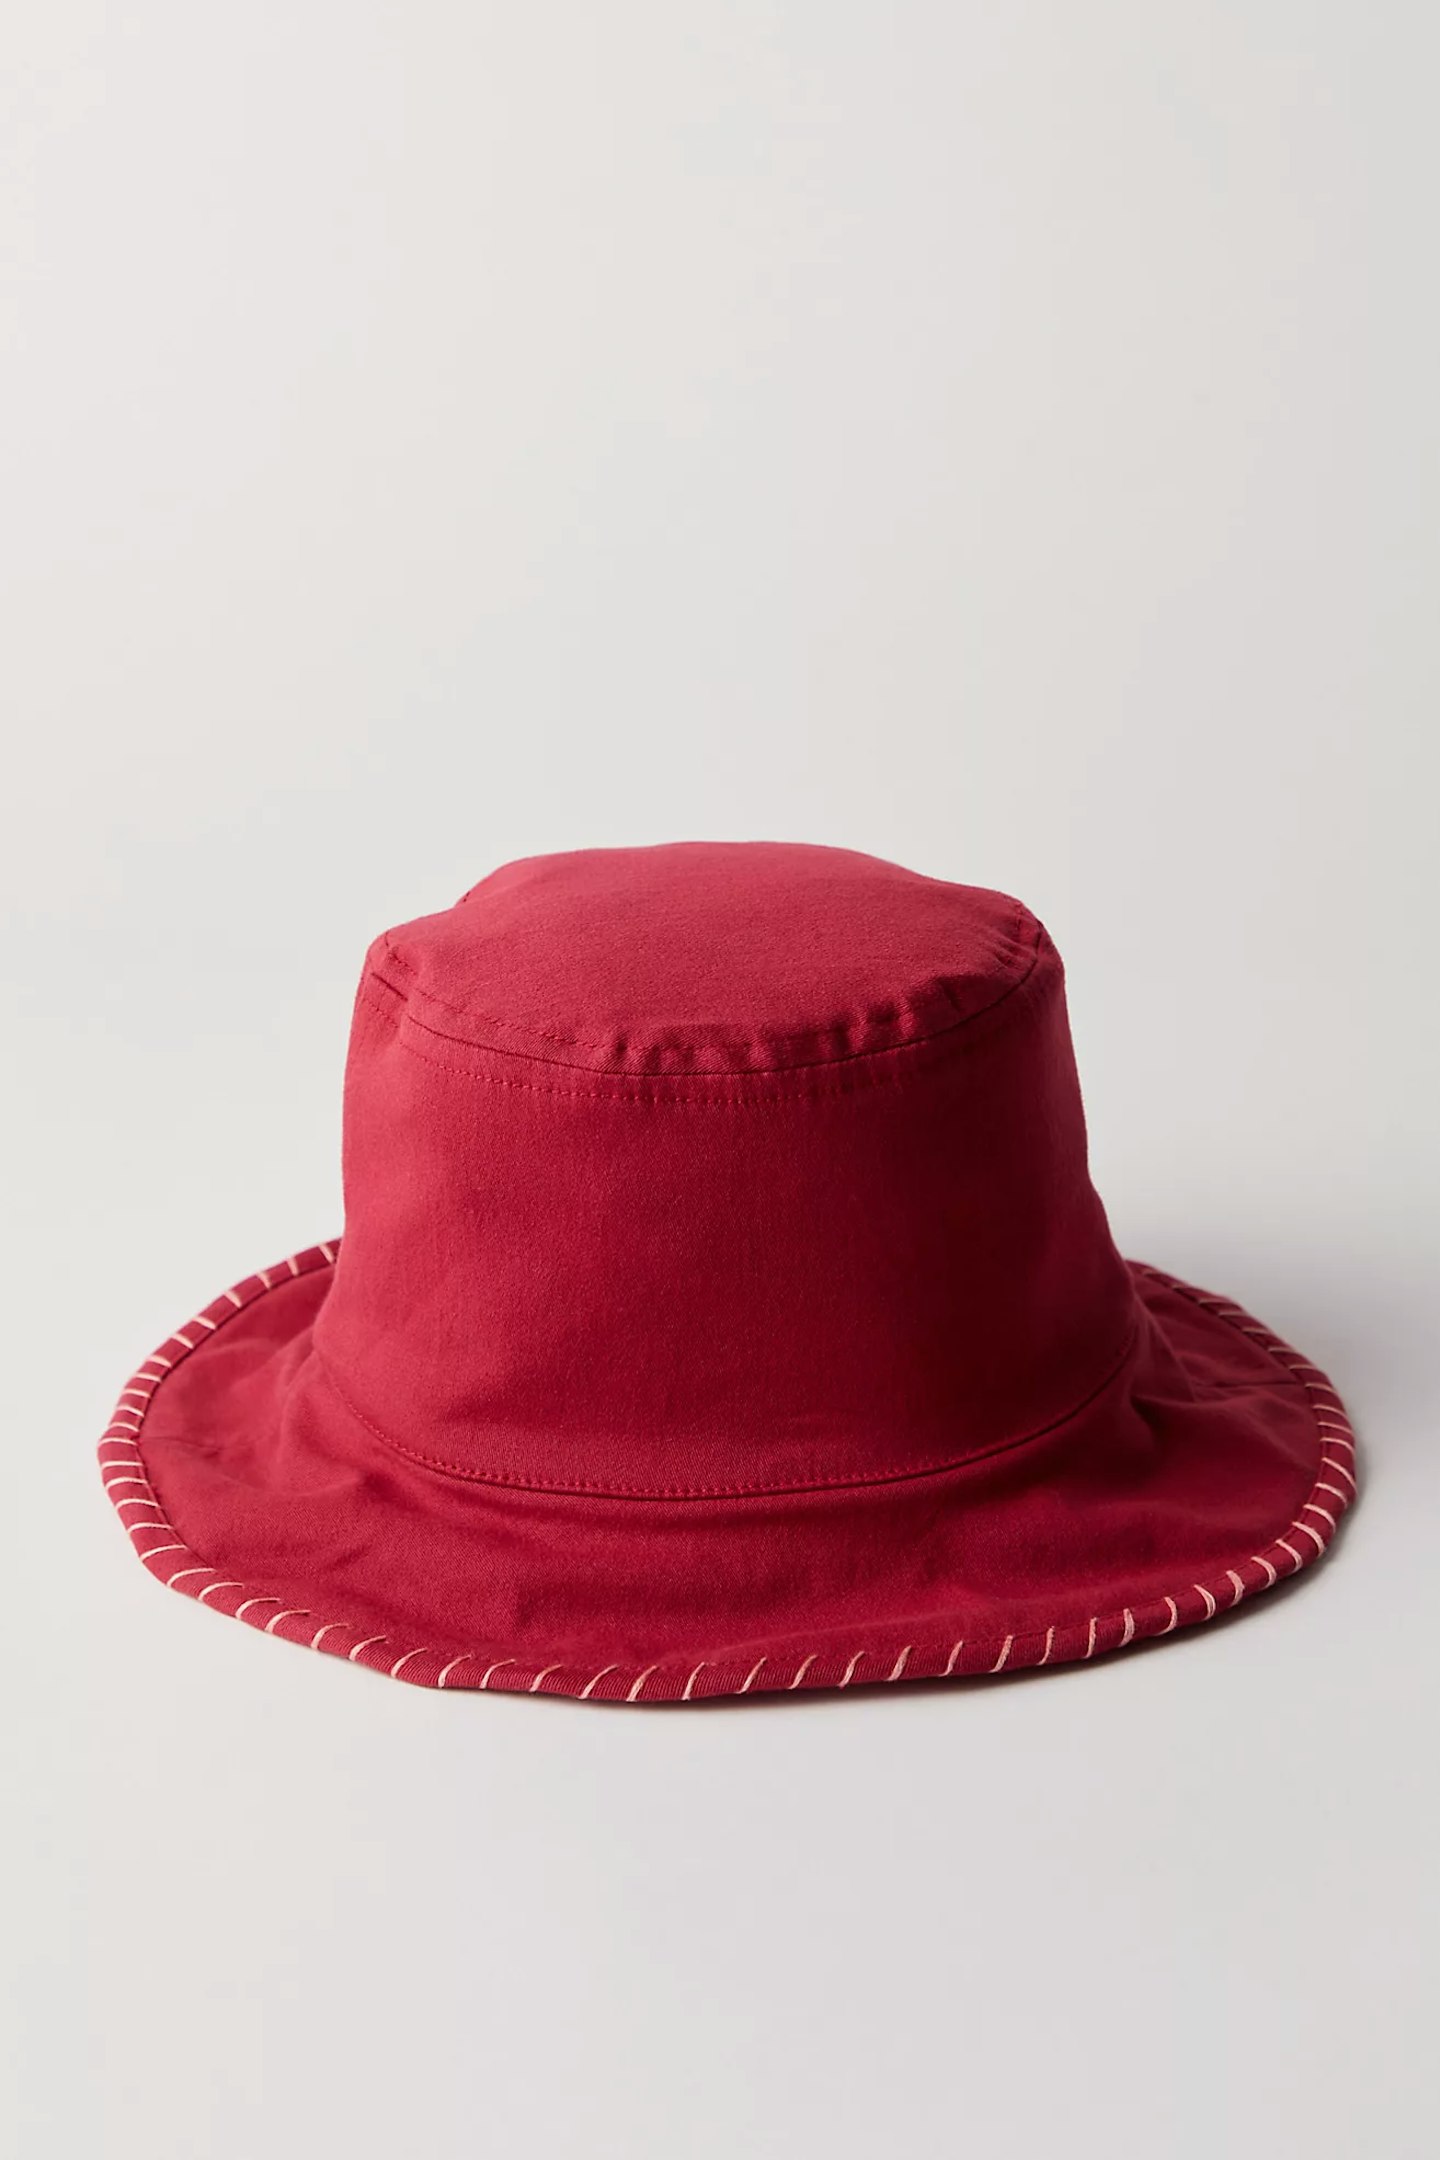 Free People, Flip Side Bucket Hat